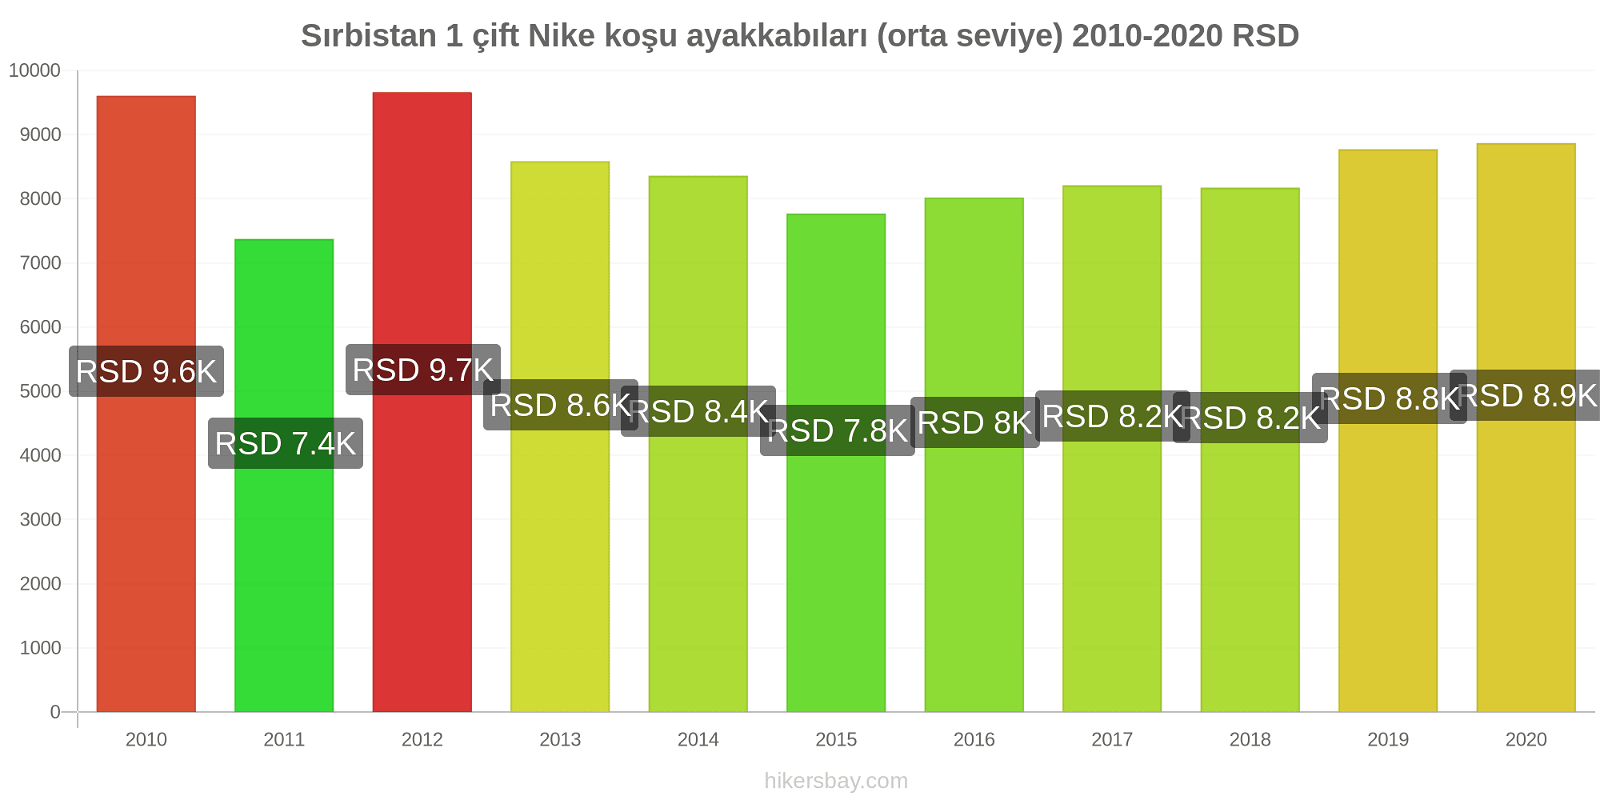 Sırbistan fiyat değişiklikleri 1 çift Nike koşu ayakkabıları (orta seviye) hikersbay.com